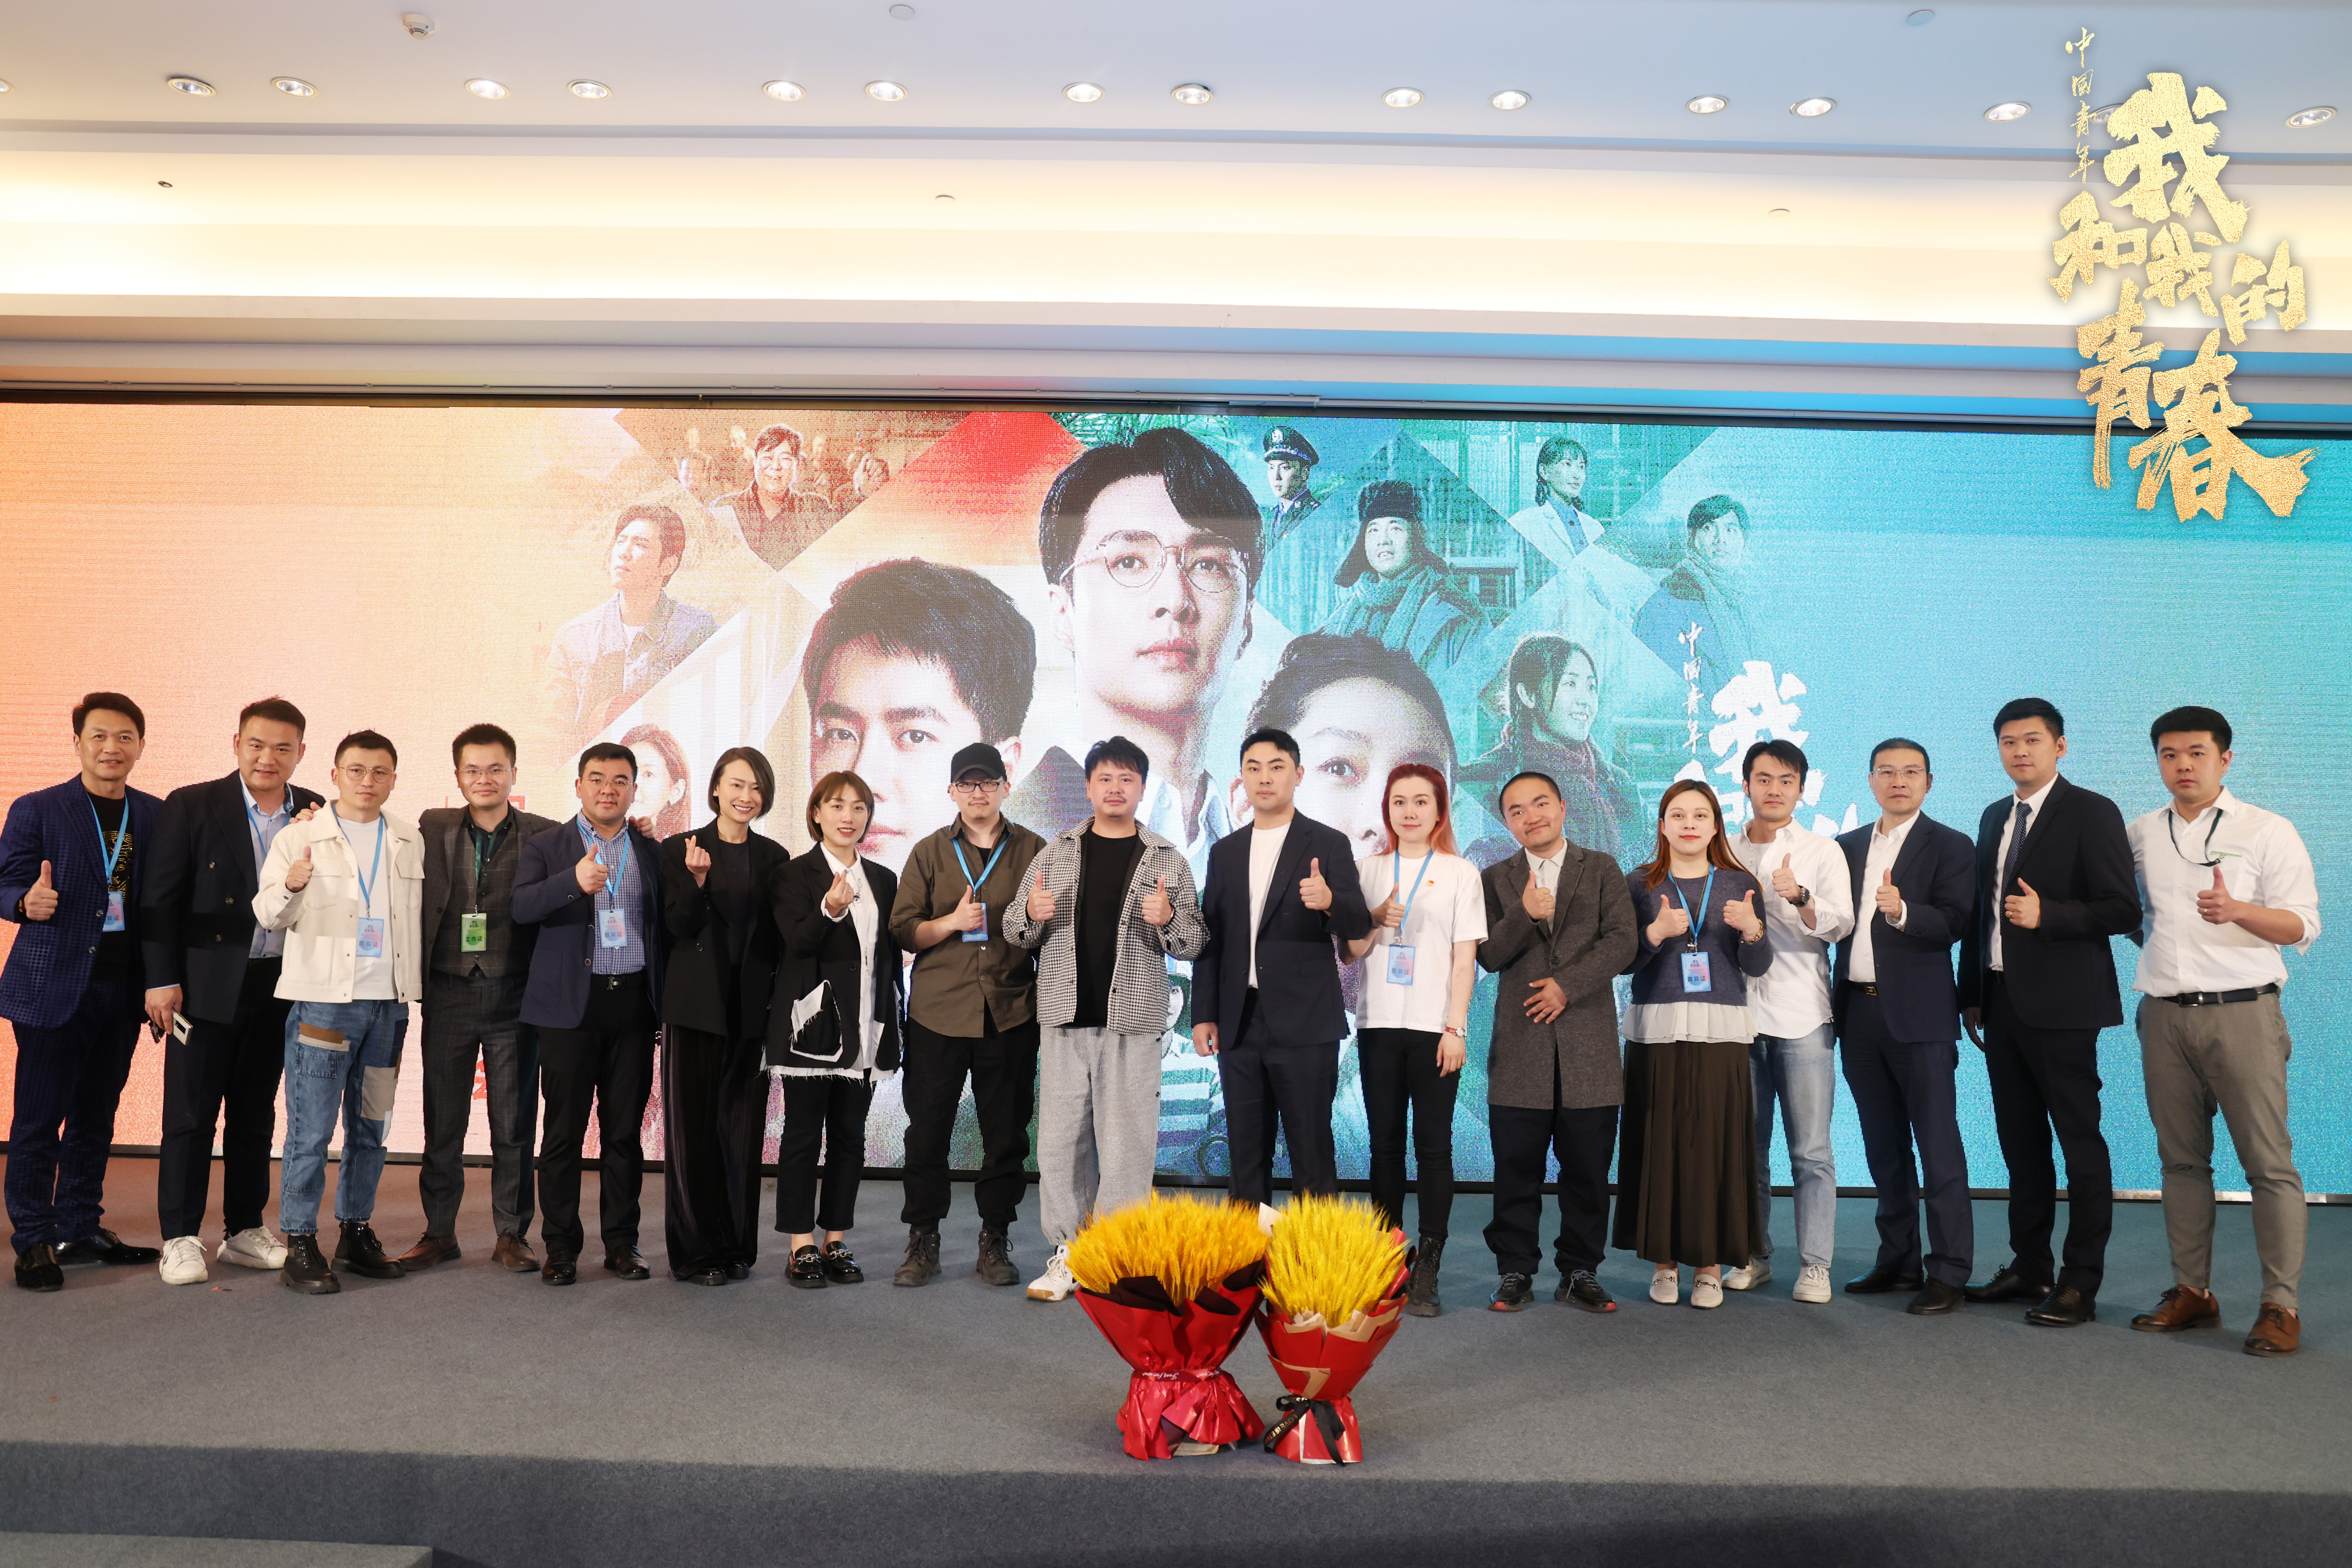 网络电影《中国青年：我和我的青春》将于5月1日上线